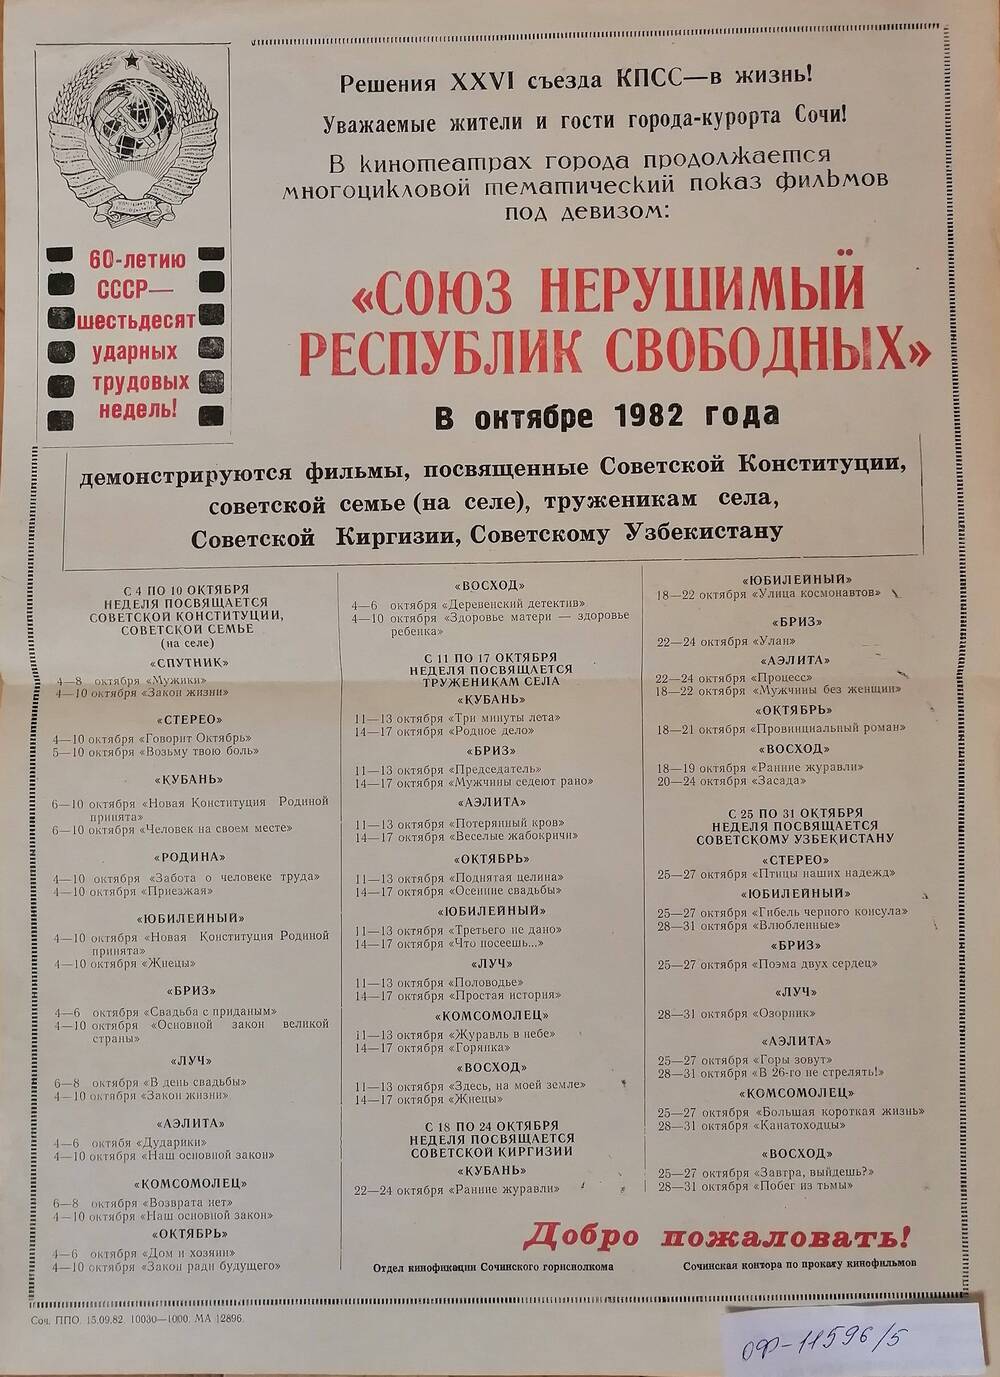 Реклама фильмов, демонстрирующихся в Сочи в октябре 1982 г. под девизом Союз нерушимый республик свободных.